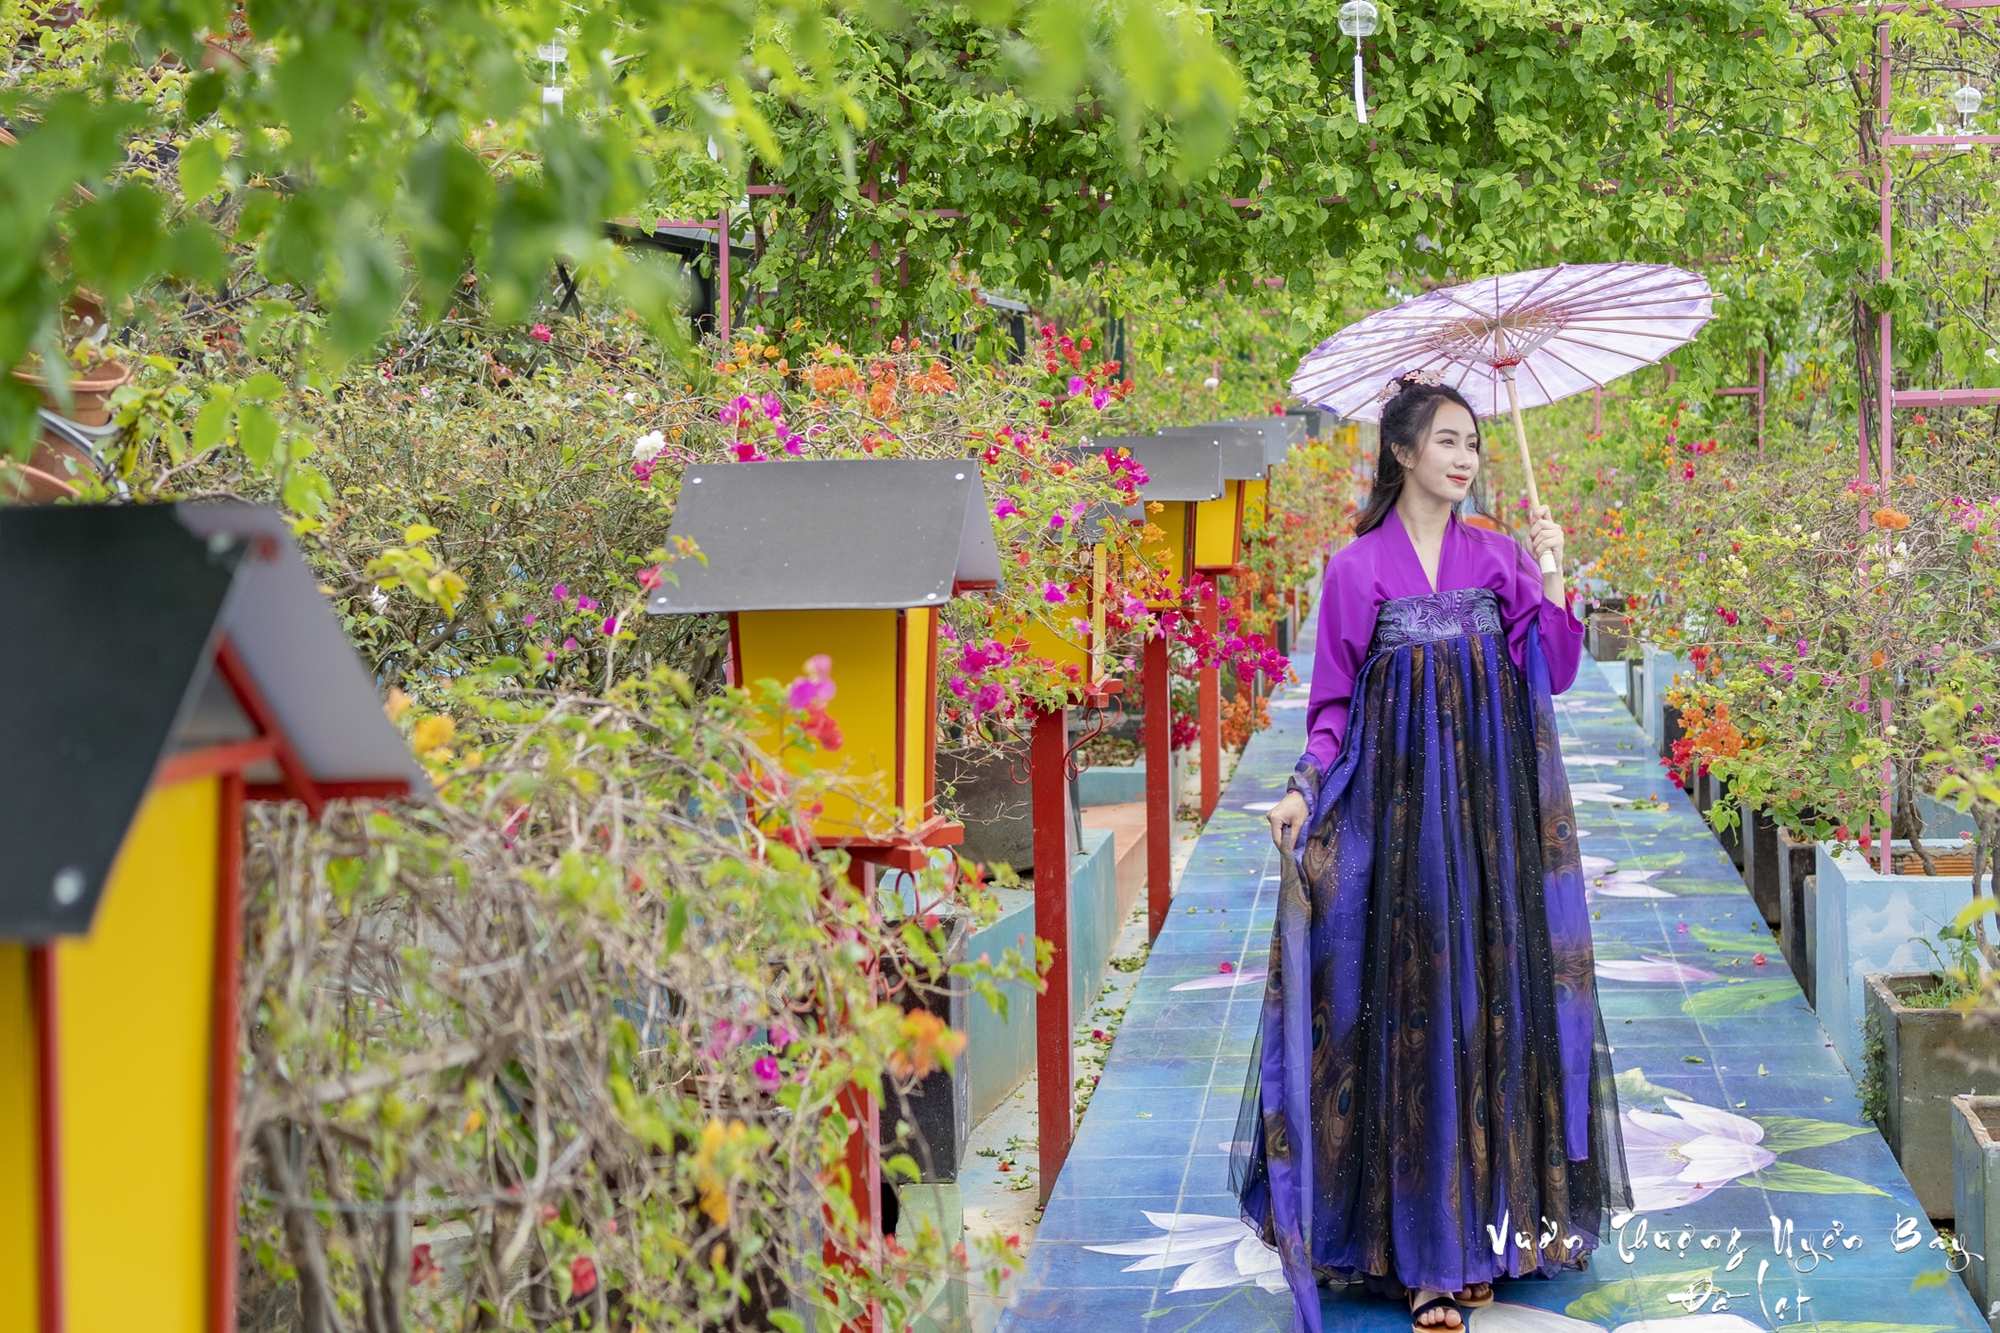 Mãn nhãn khung cảnh trong Vườn thượng uyển bay Đà Lạt, du khách thích thú check in - Ảnh 4.